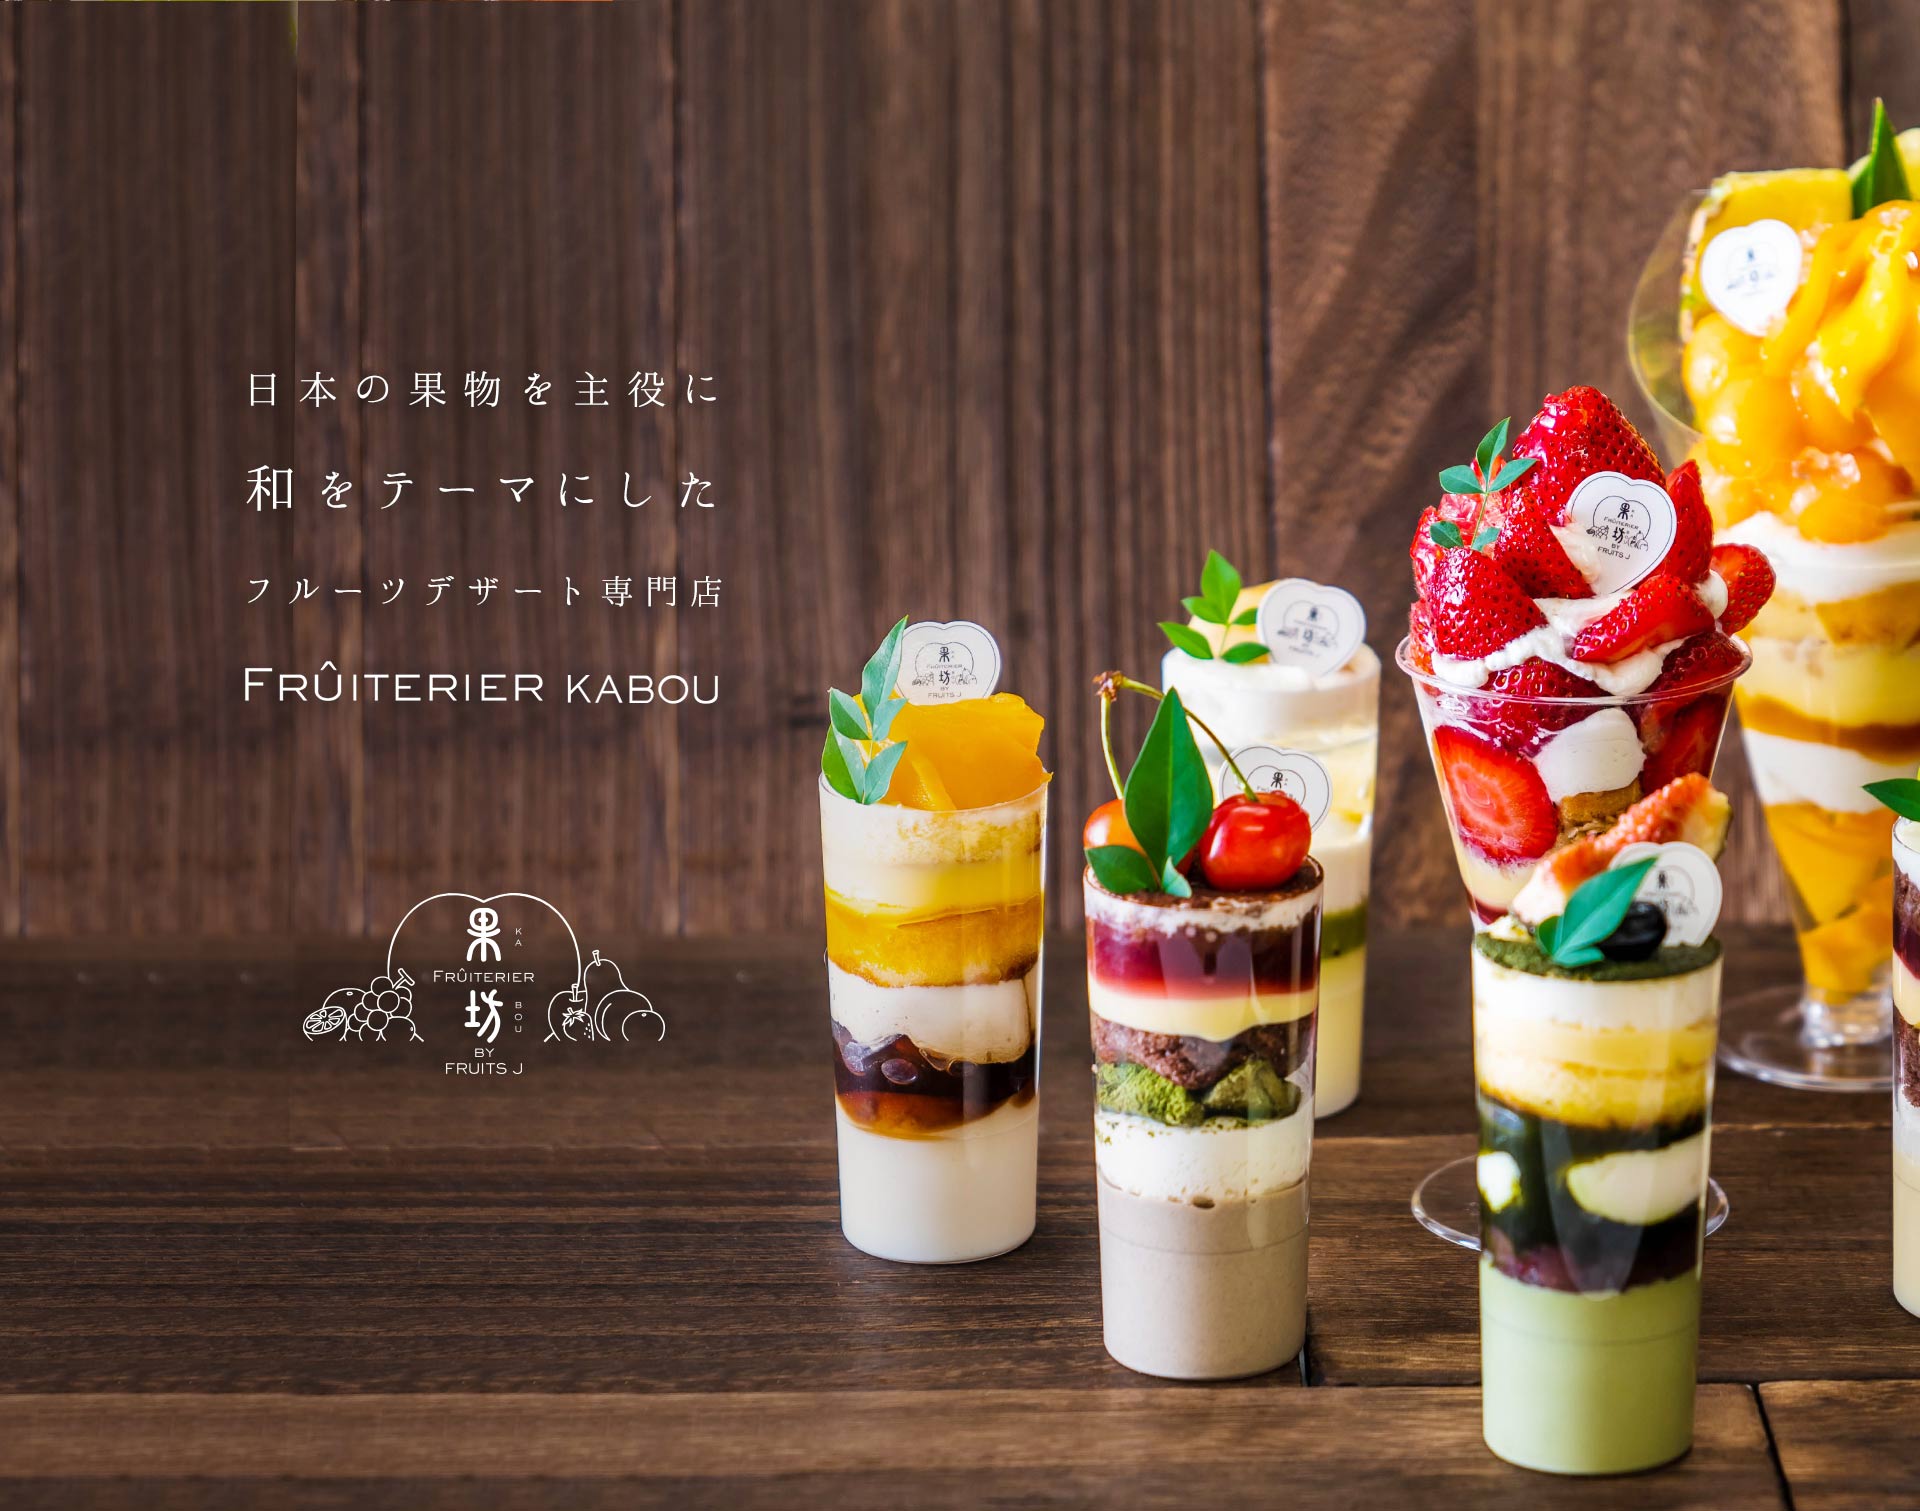 日本の果物を主役に、和をテーマにしたフルーツデザート専門店。 FRUITERIER KABOU